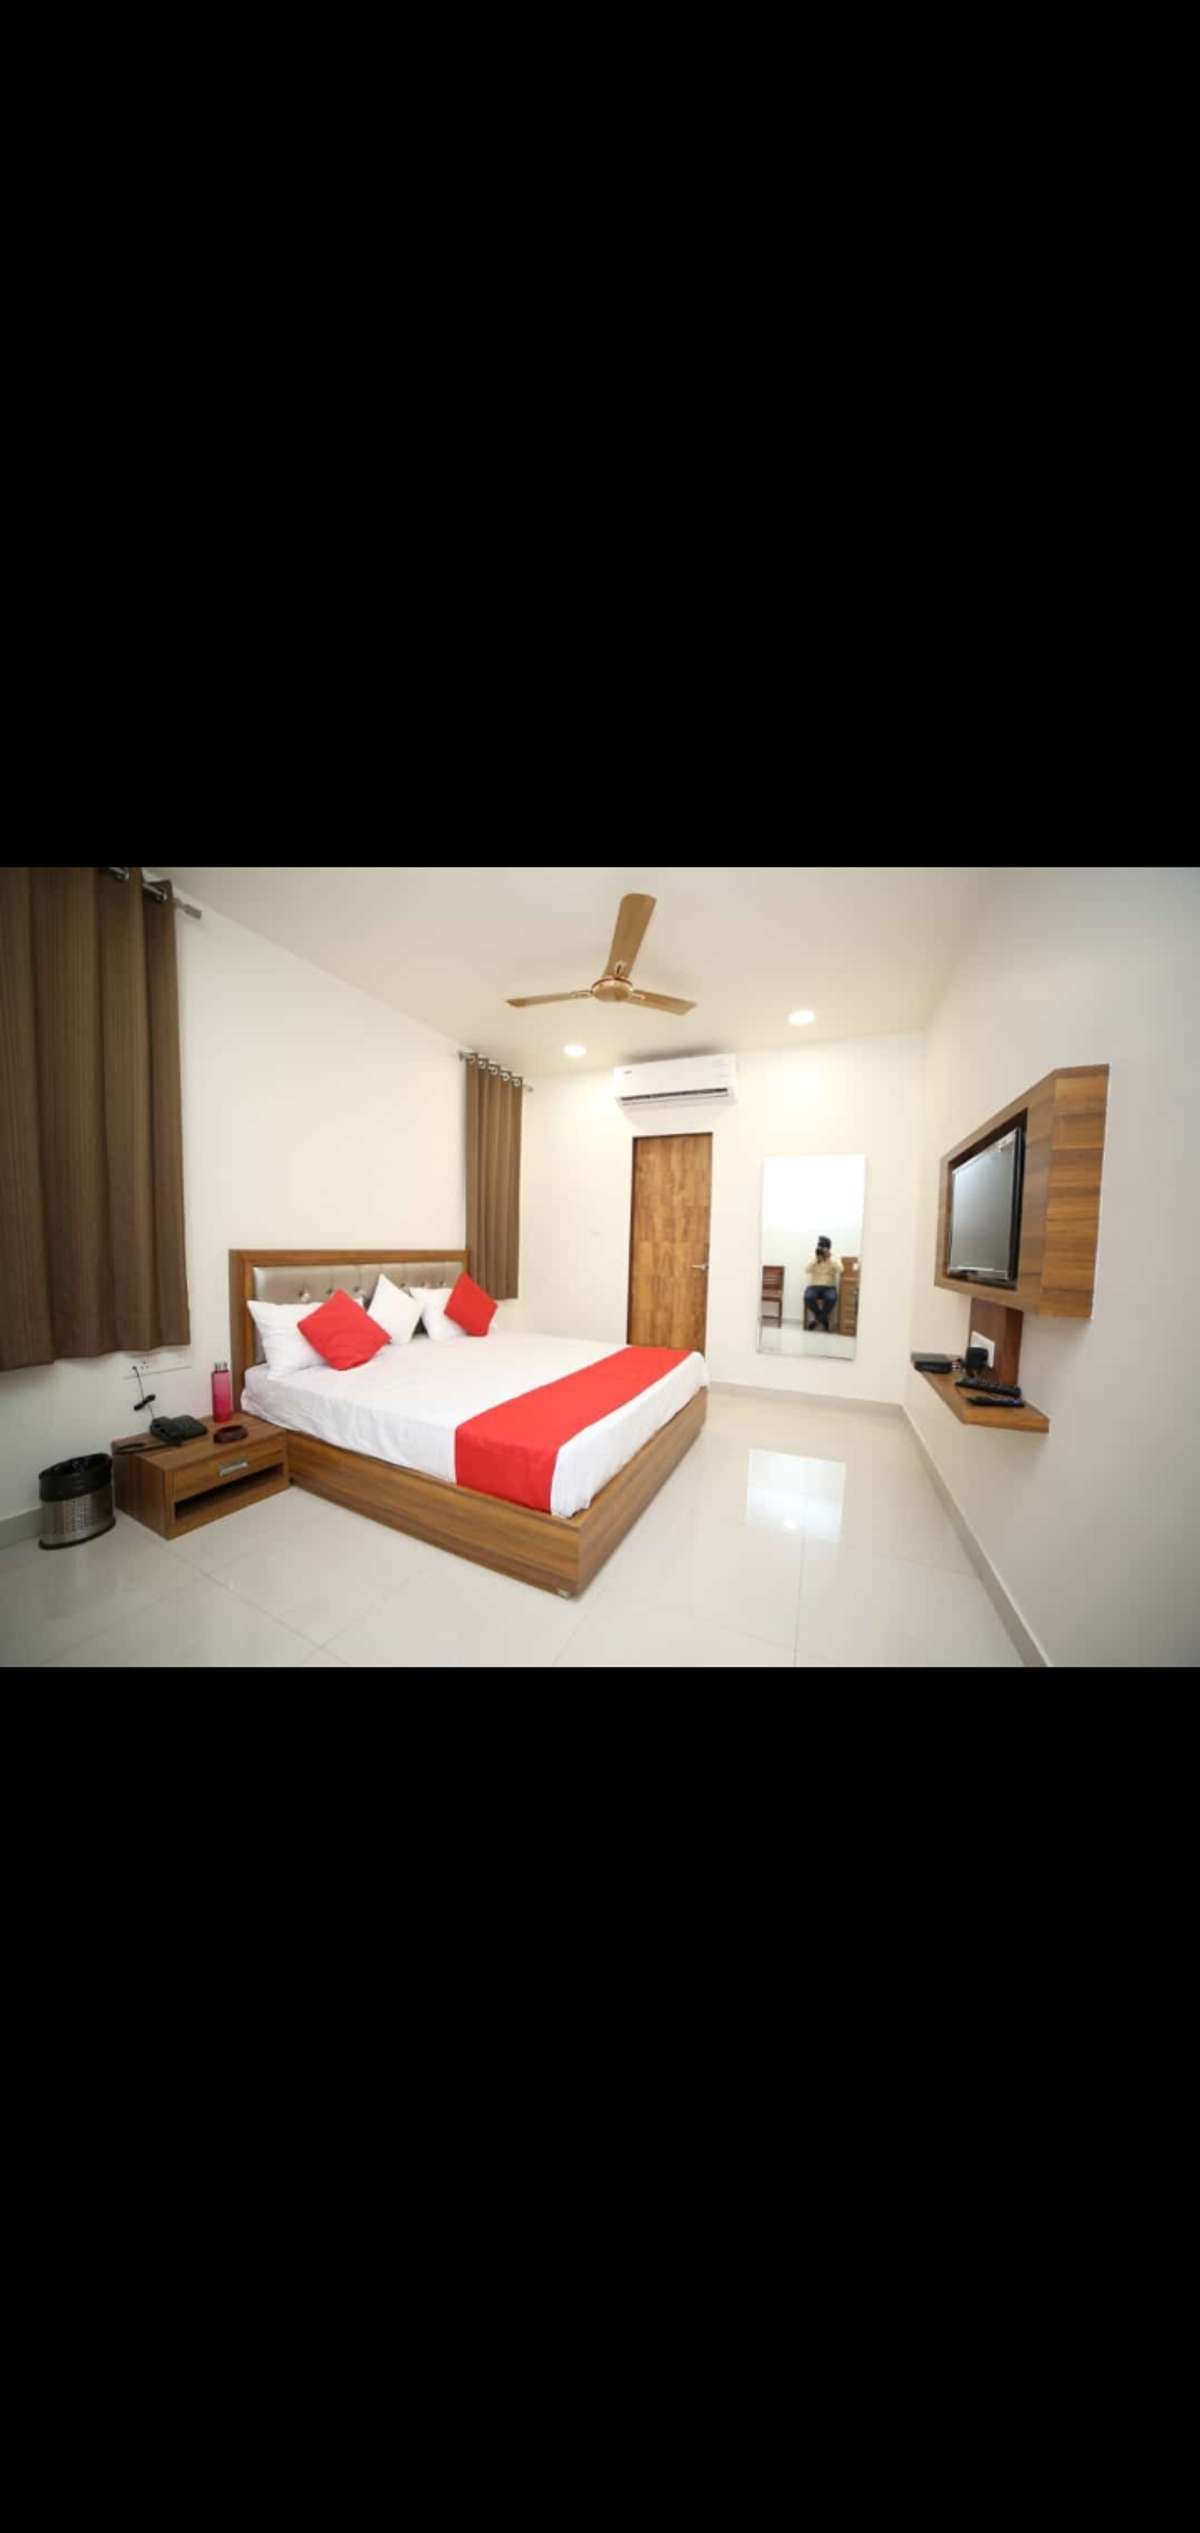 Furniture, Bedroom Designs by HVAC Work FARJAN khan, Jaipur | Kolo